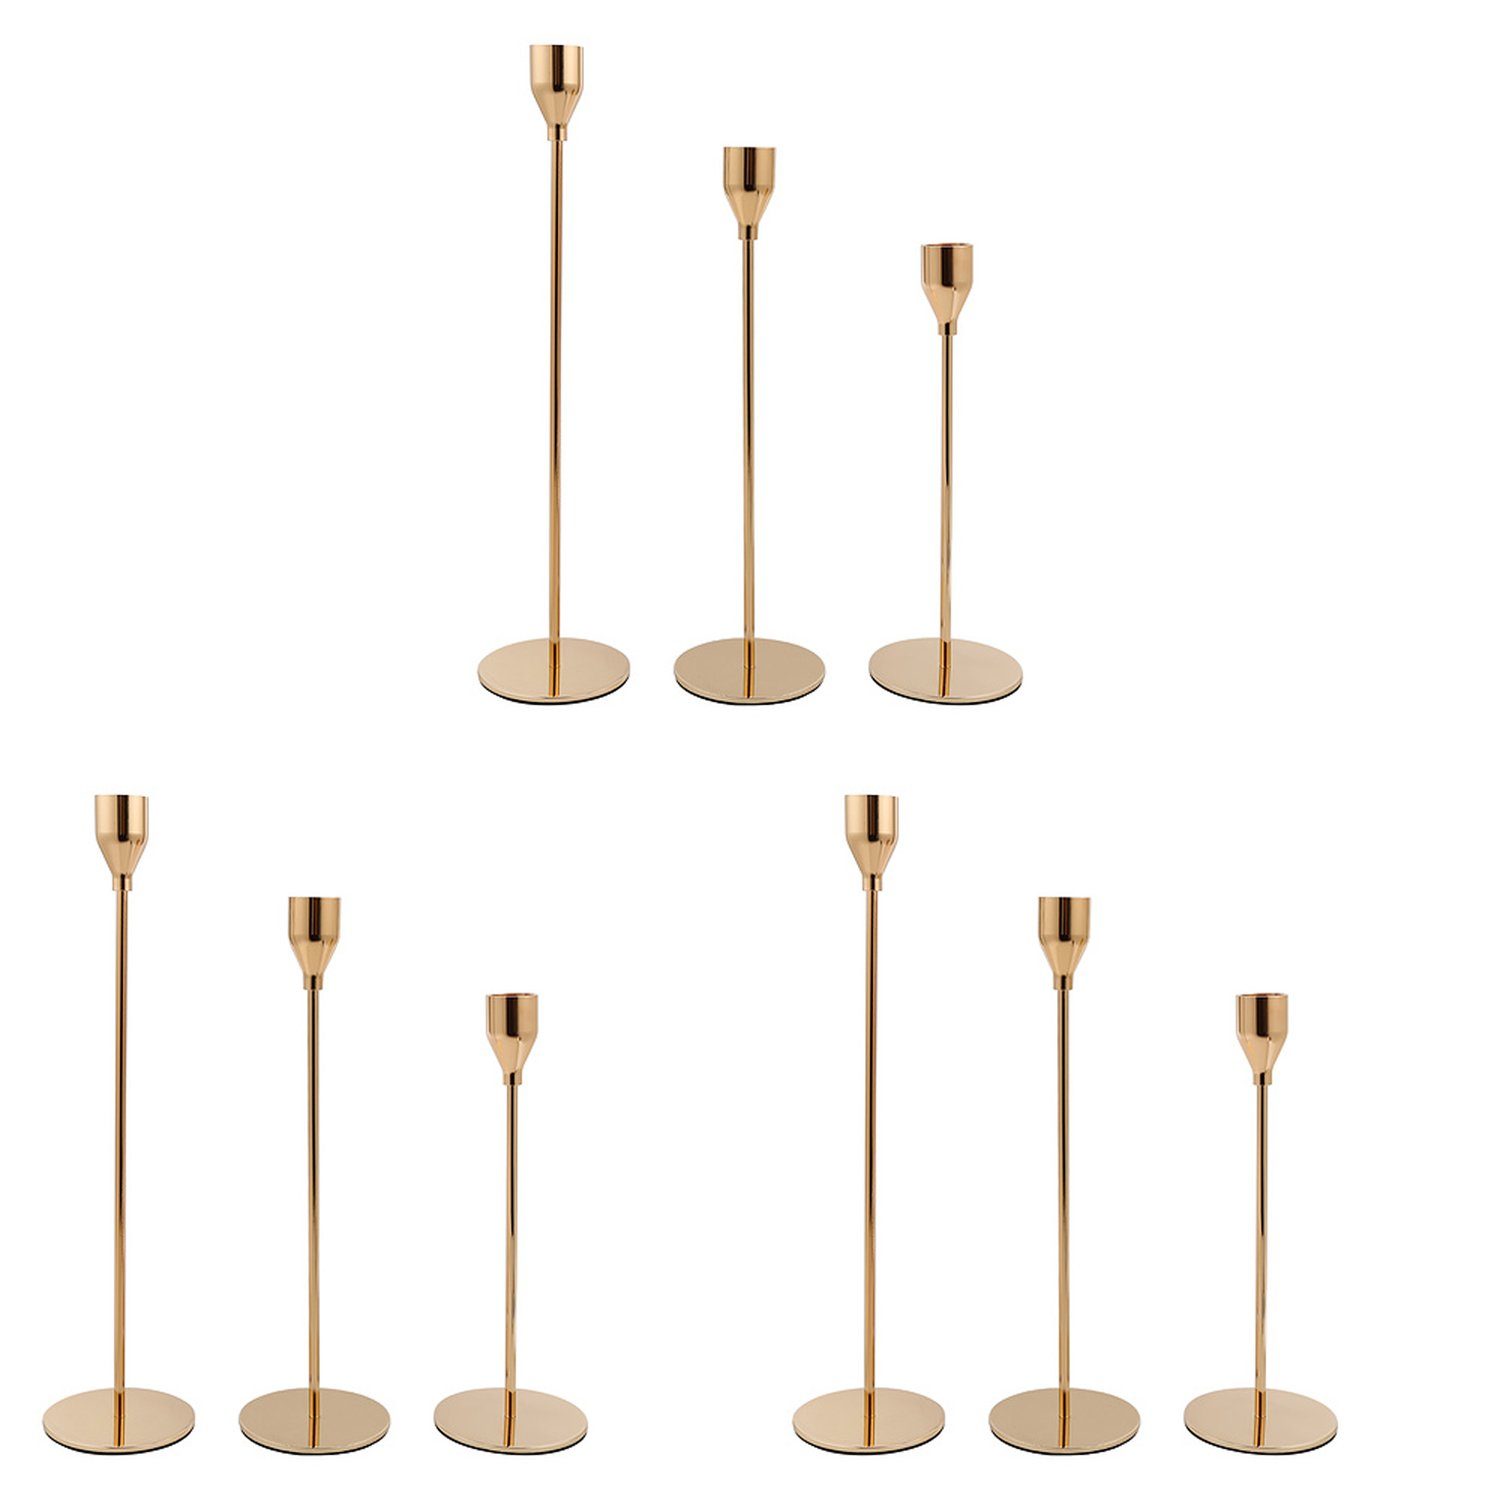 Gimisgu Kerzenständer 9x Kerzenständer für Kerzen mit einer Dicke von bis zu 2 cm gold